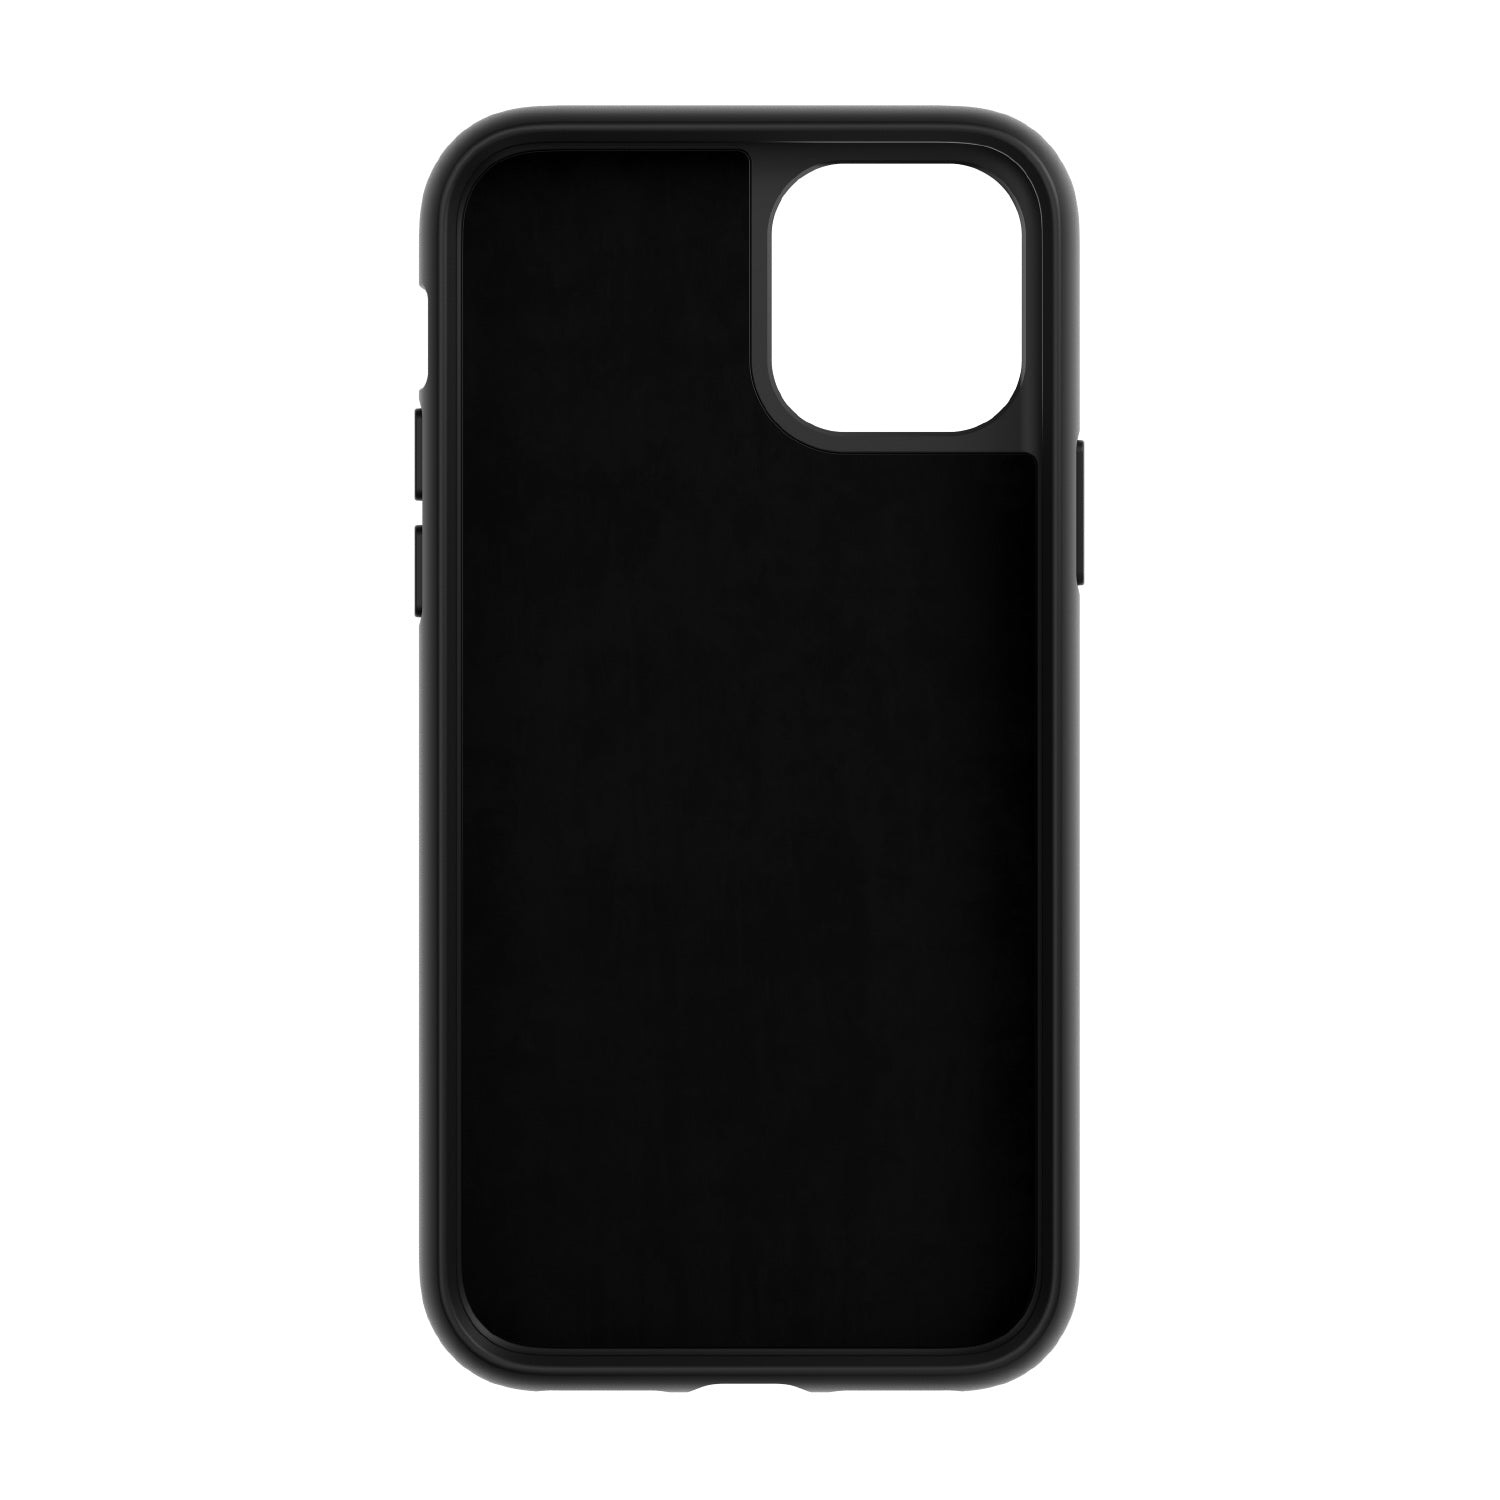 iPhone VACUUM magnetic smartphone case